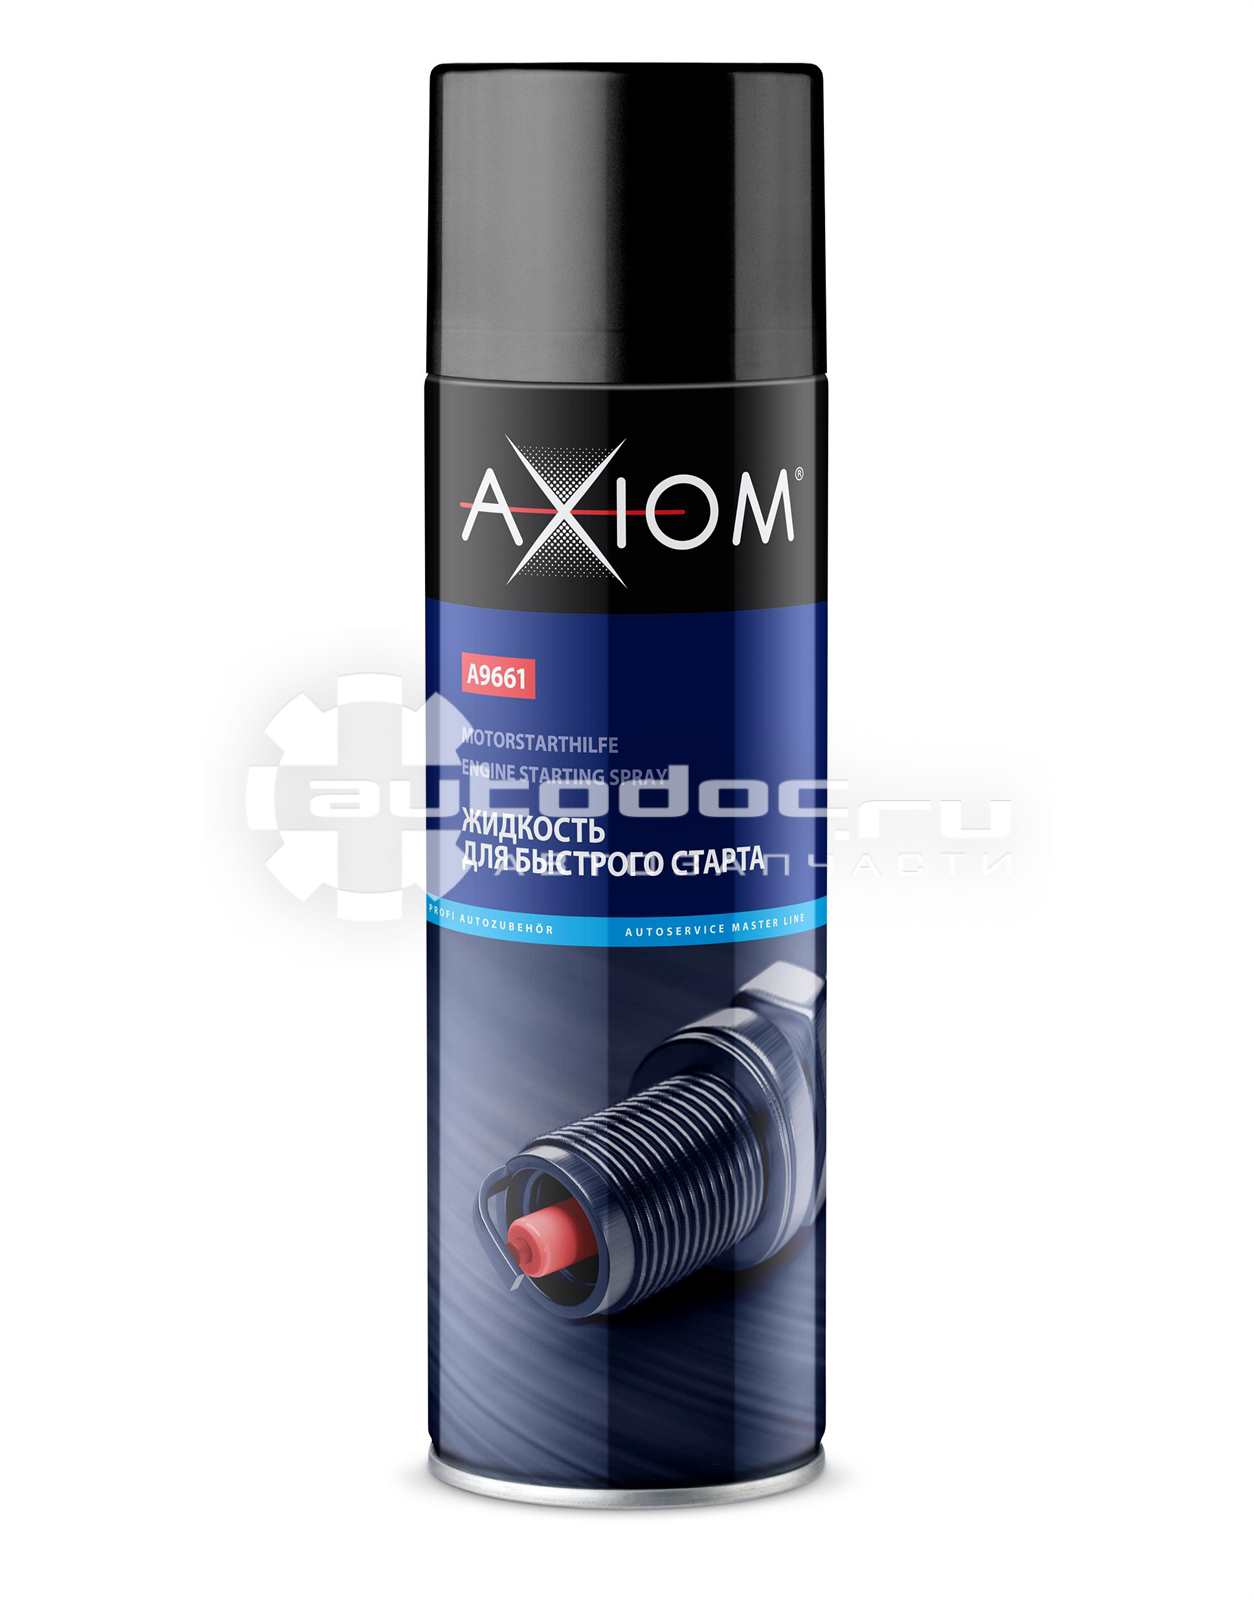 Аксиом мод. Очиститель 650мл. Axiom a9601. Жидкость для быстрого старта 650мл. Axiom. Axiom a9622. Axiom автокосметика.